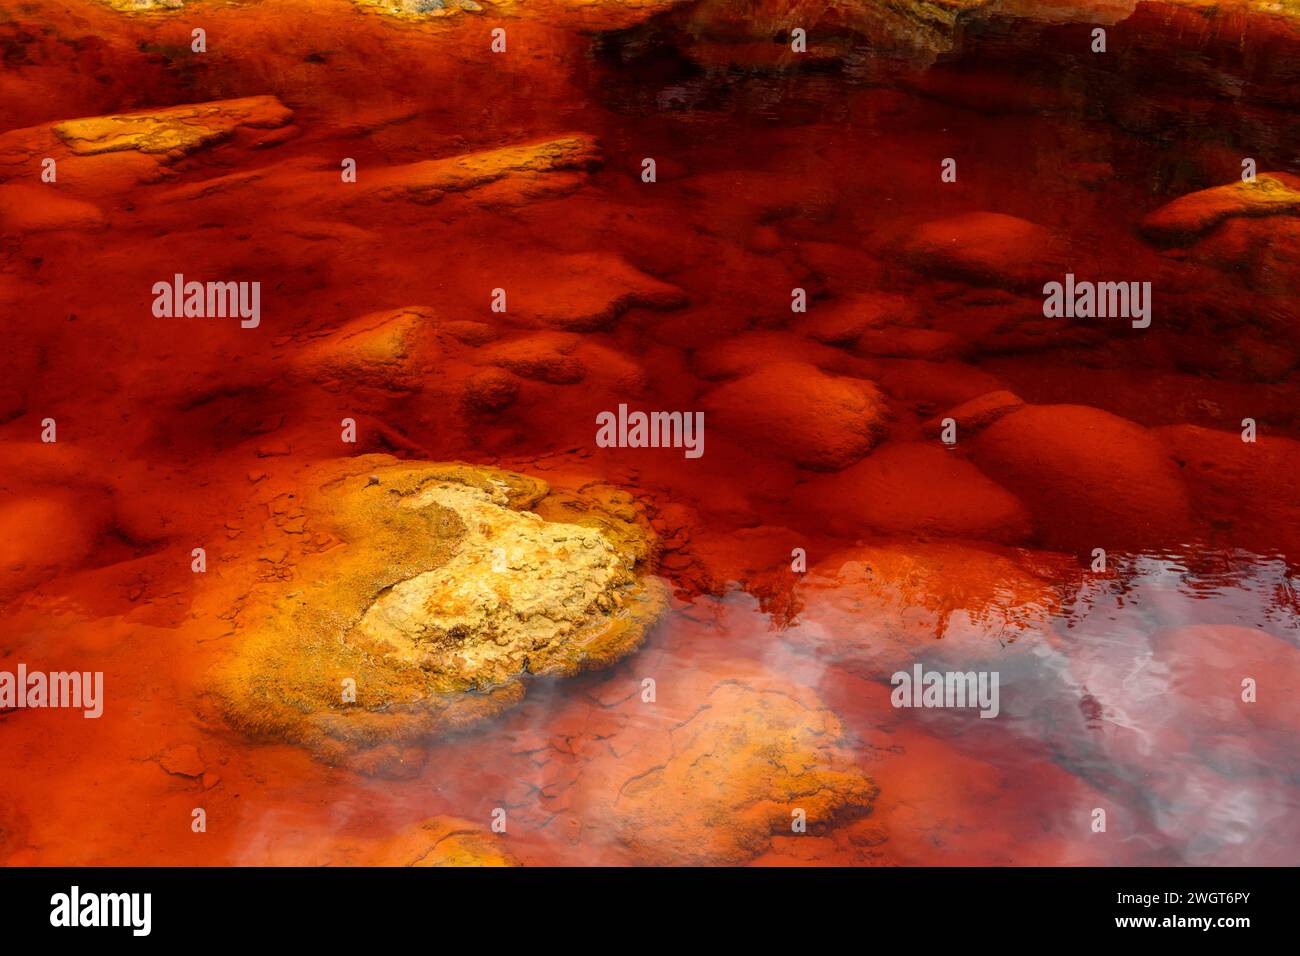 Les eaux rouges extraordinaires du Rio Tinto coulent le long de falaises rocheuses abruptes, mettant en valeur l'art unique de la nature. Banque D'Images